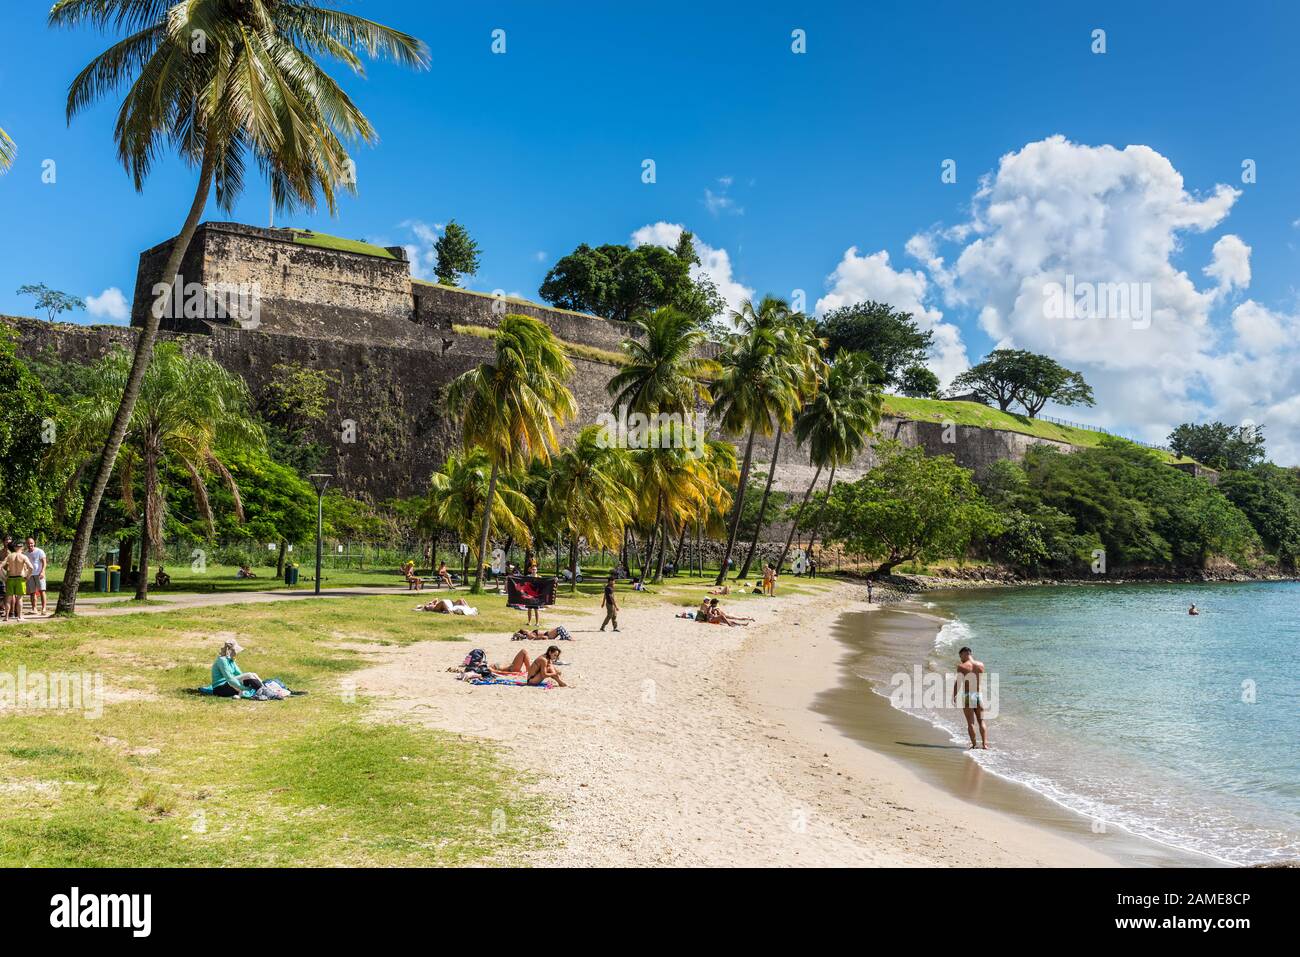 Fort-de-France, Martinique - 13 décembre 2018 : la plage de la Francaise (Plage de la Francaise) est située dans le centre-ville de fort de France, la capitale du C Banque D'Images